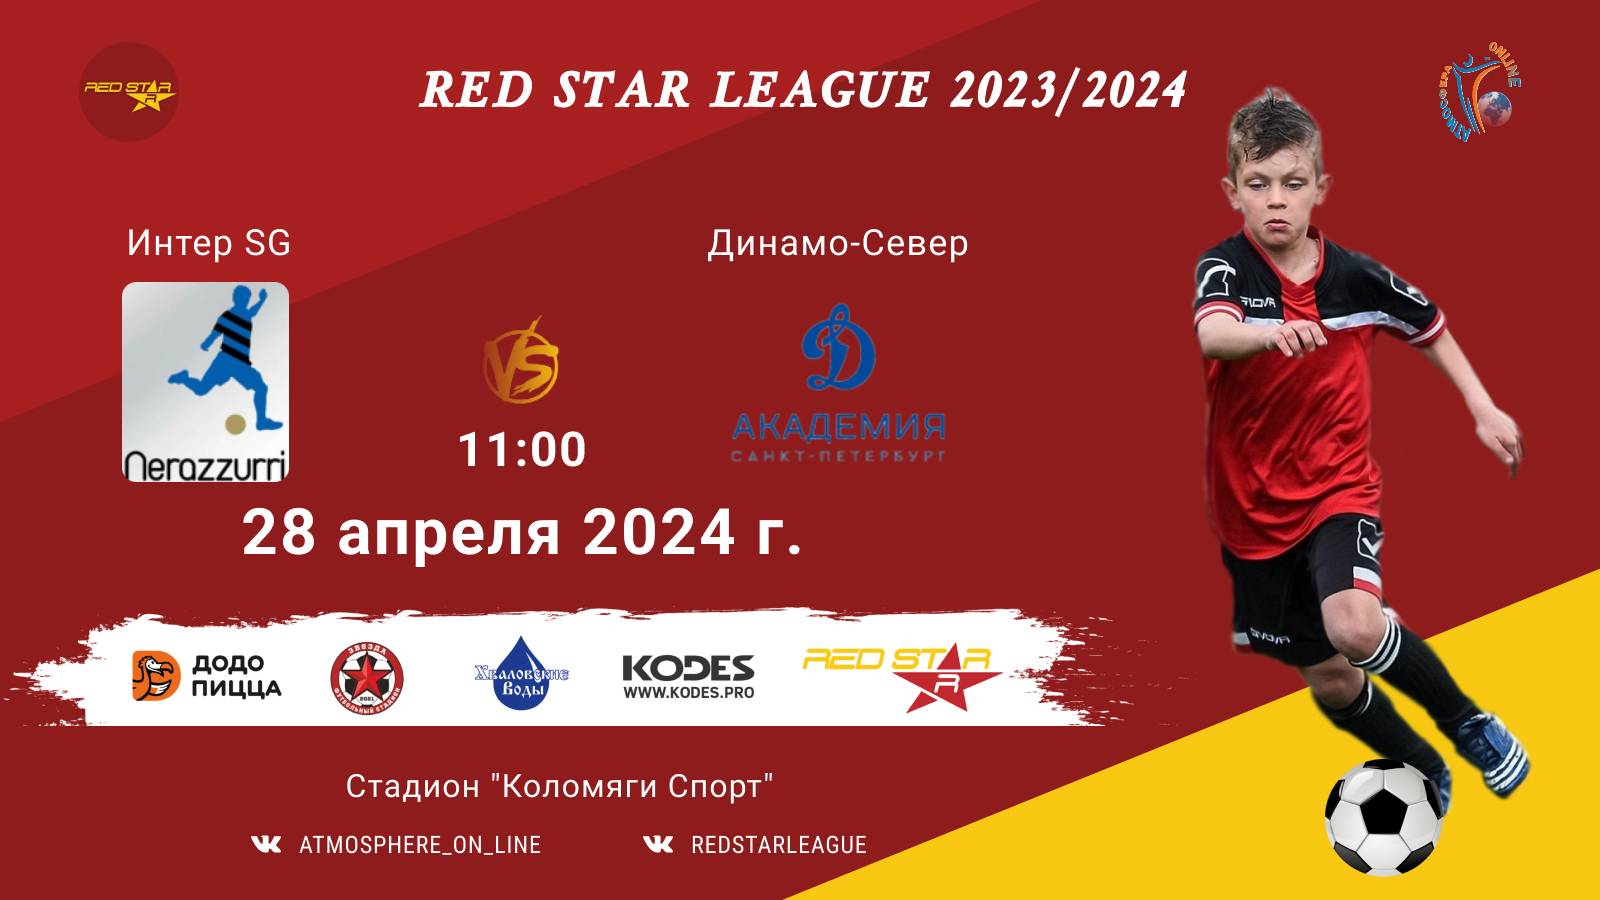 ФК "Интер SG" - ФК "Динамо-Север"/Red Star League, 28-04-2024 11:00